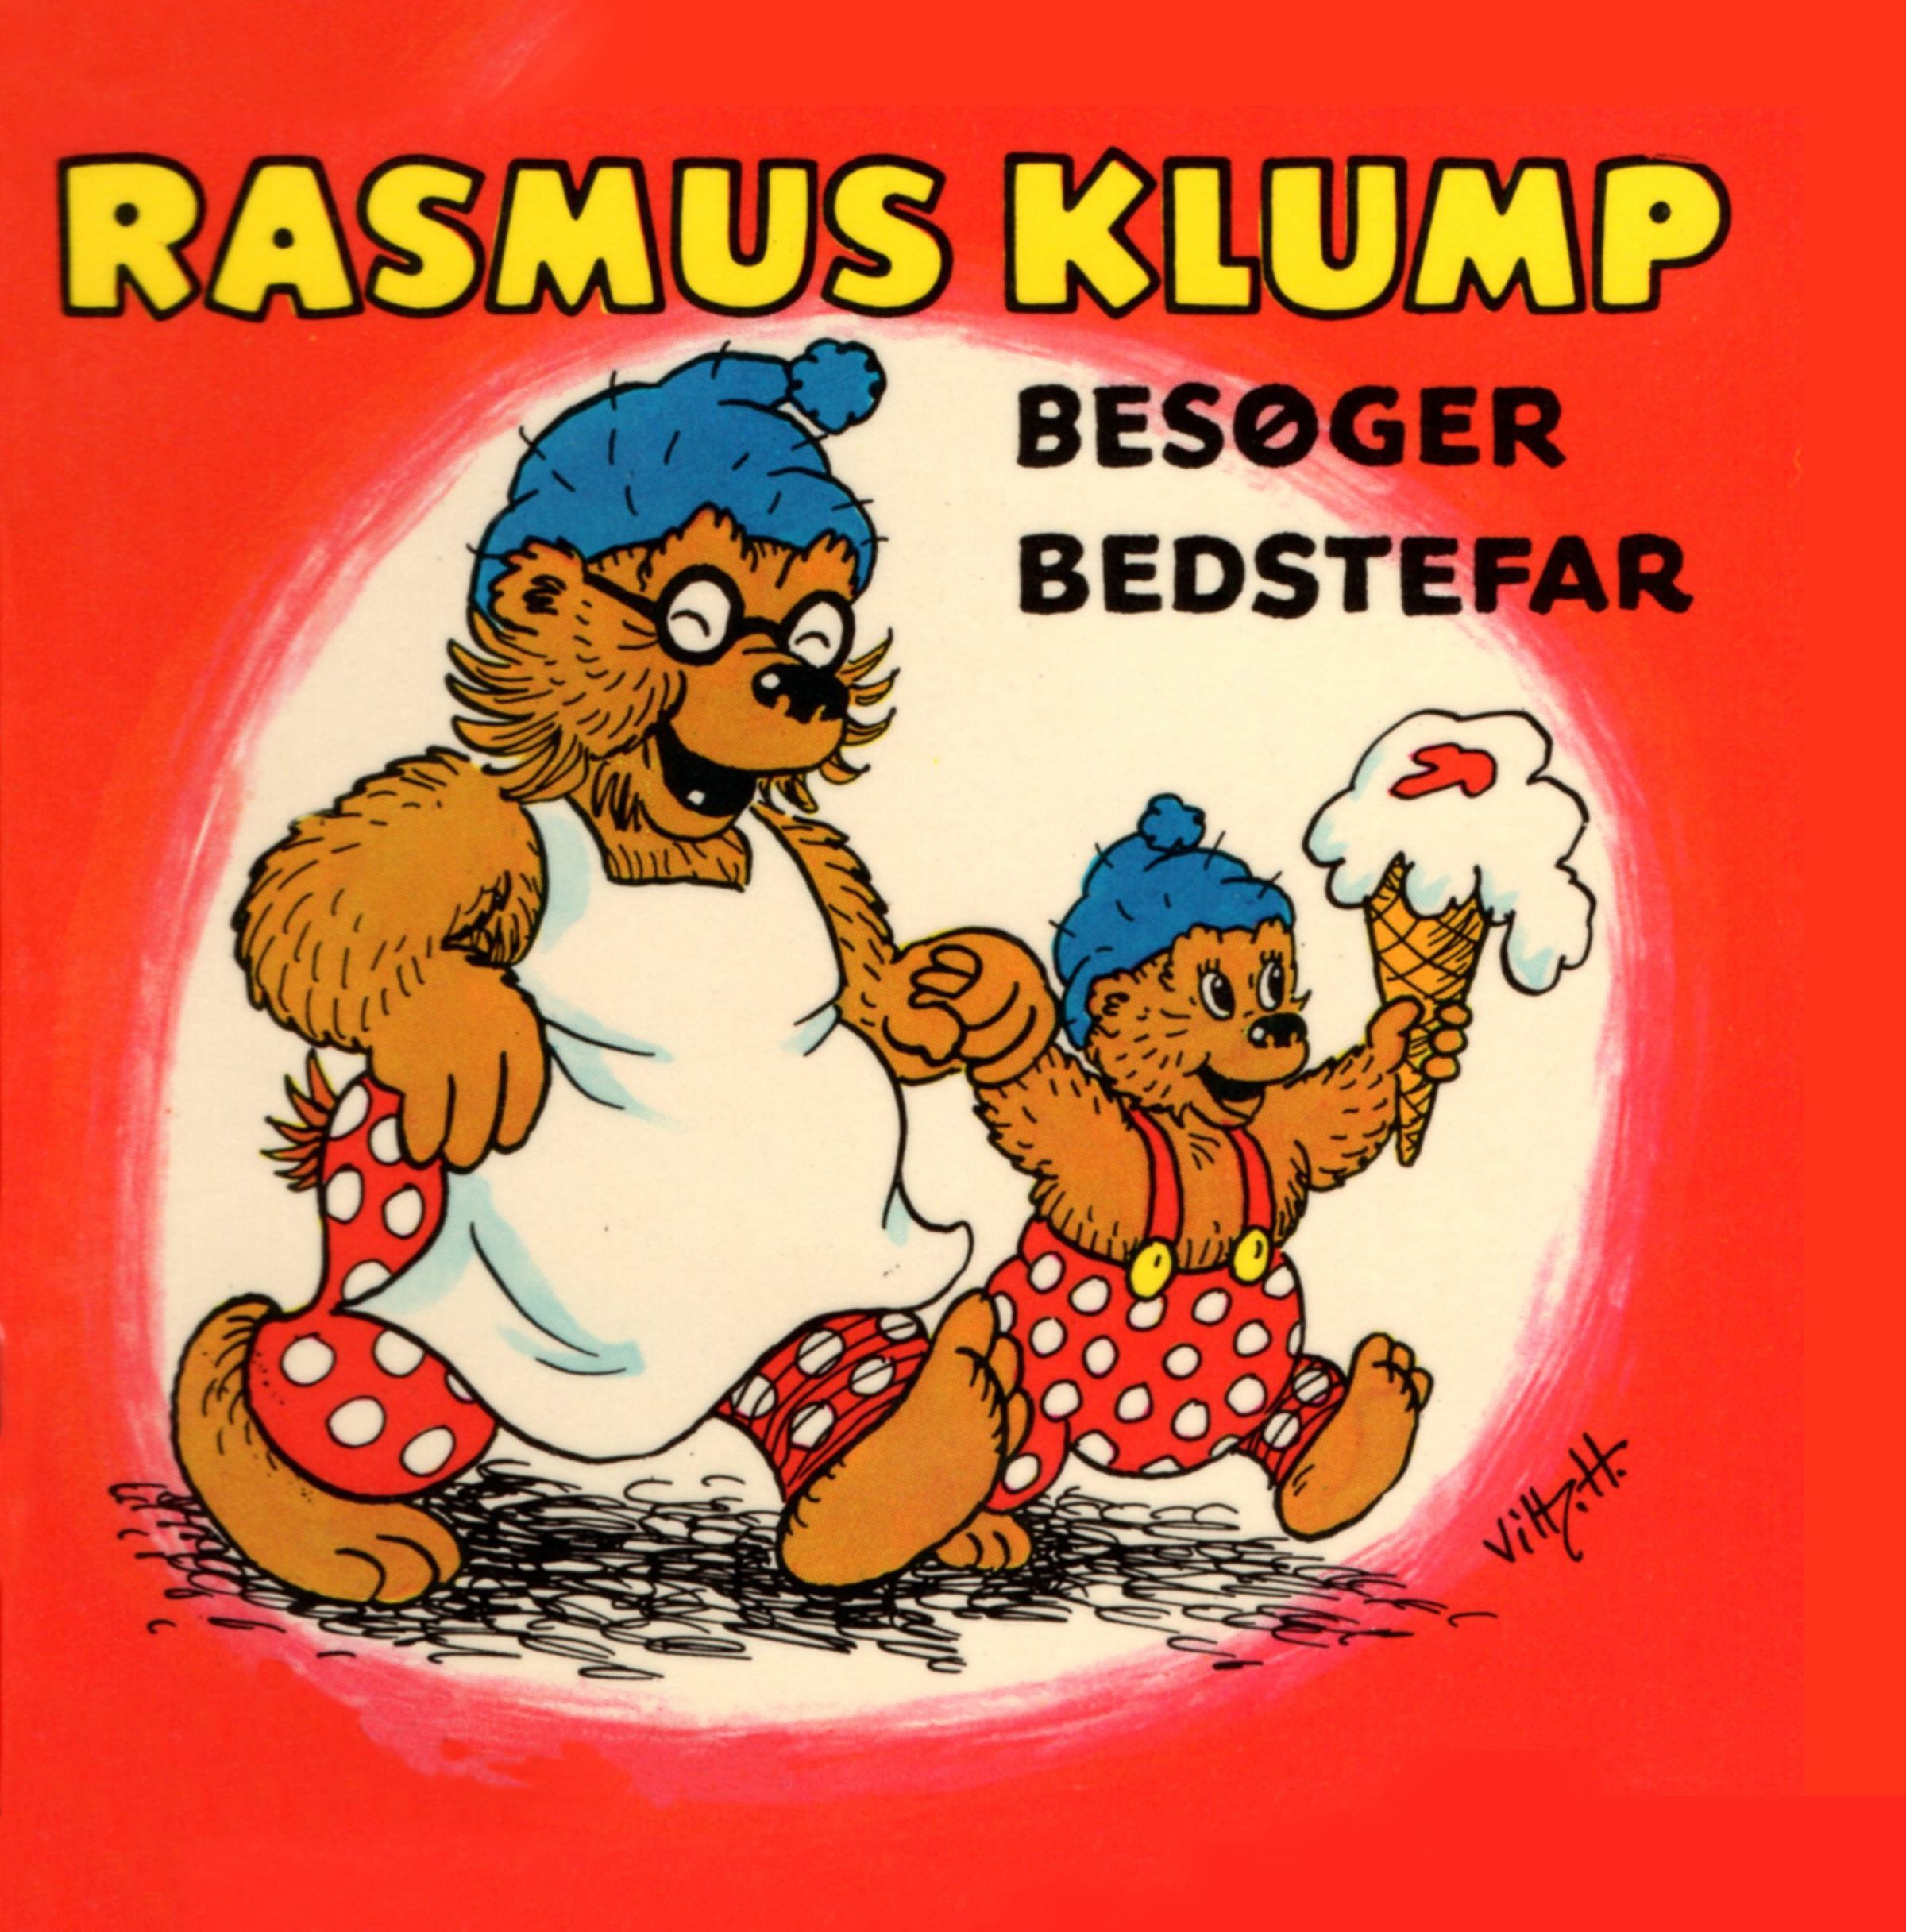 Rasmus Klump besøger bedstefar, audiobook by Carla Og Vilh. Hansen